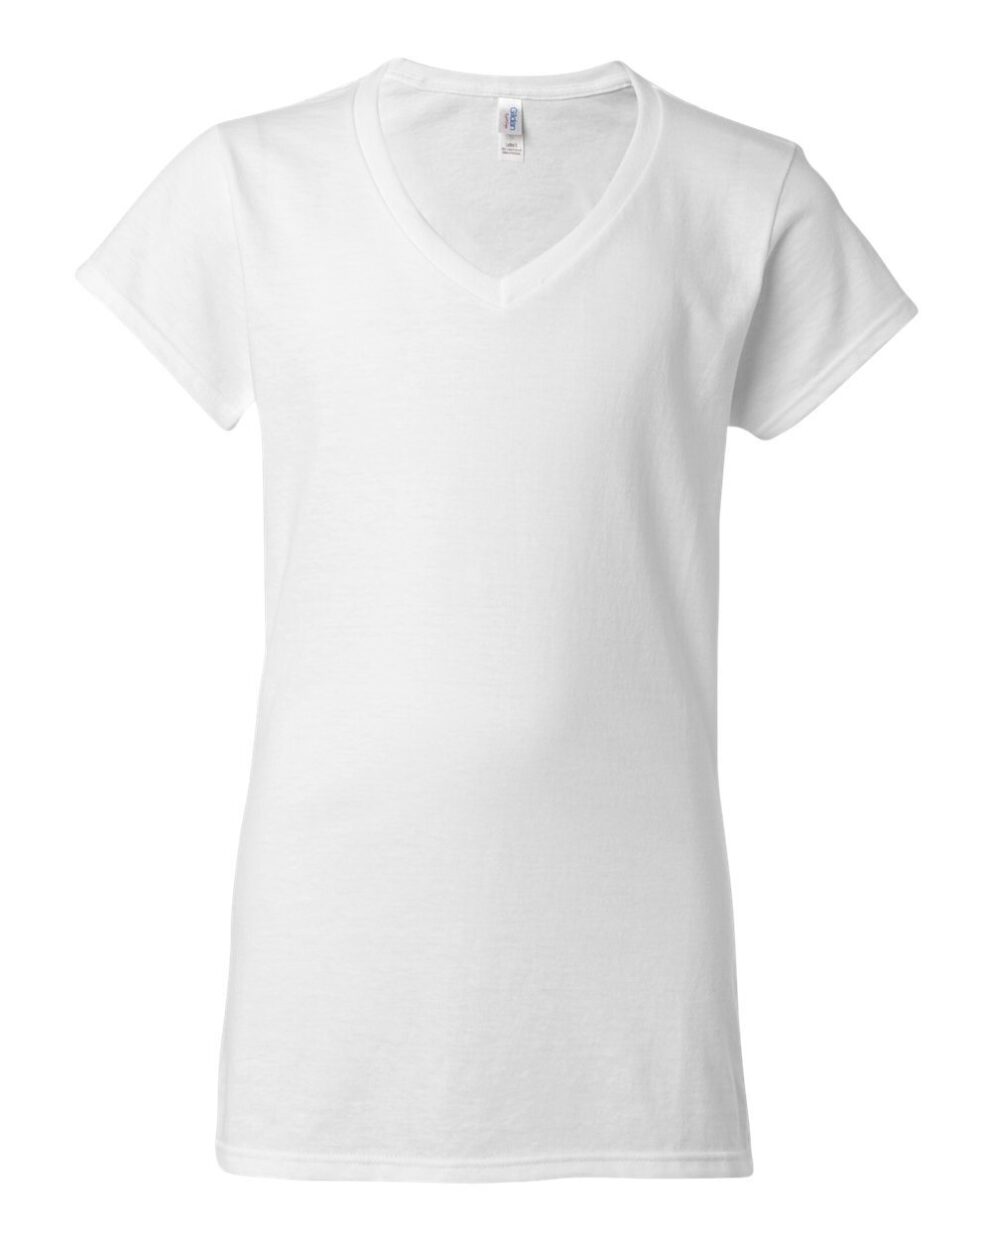 Ladies V-neck White Cotton T-shirt